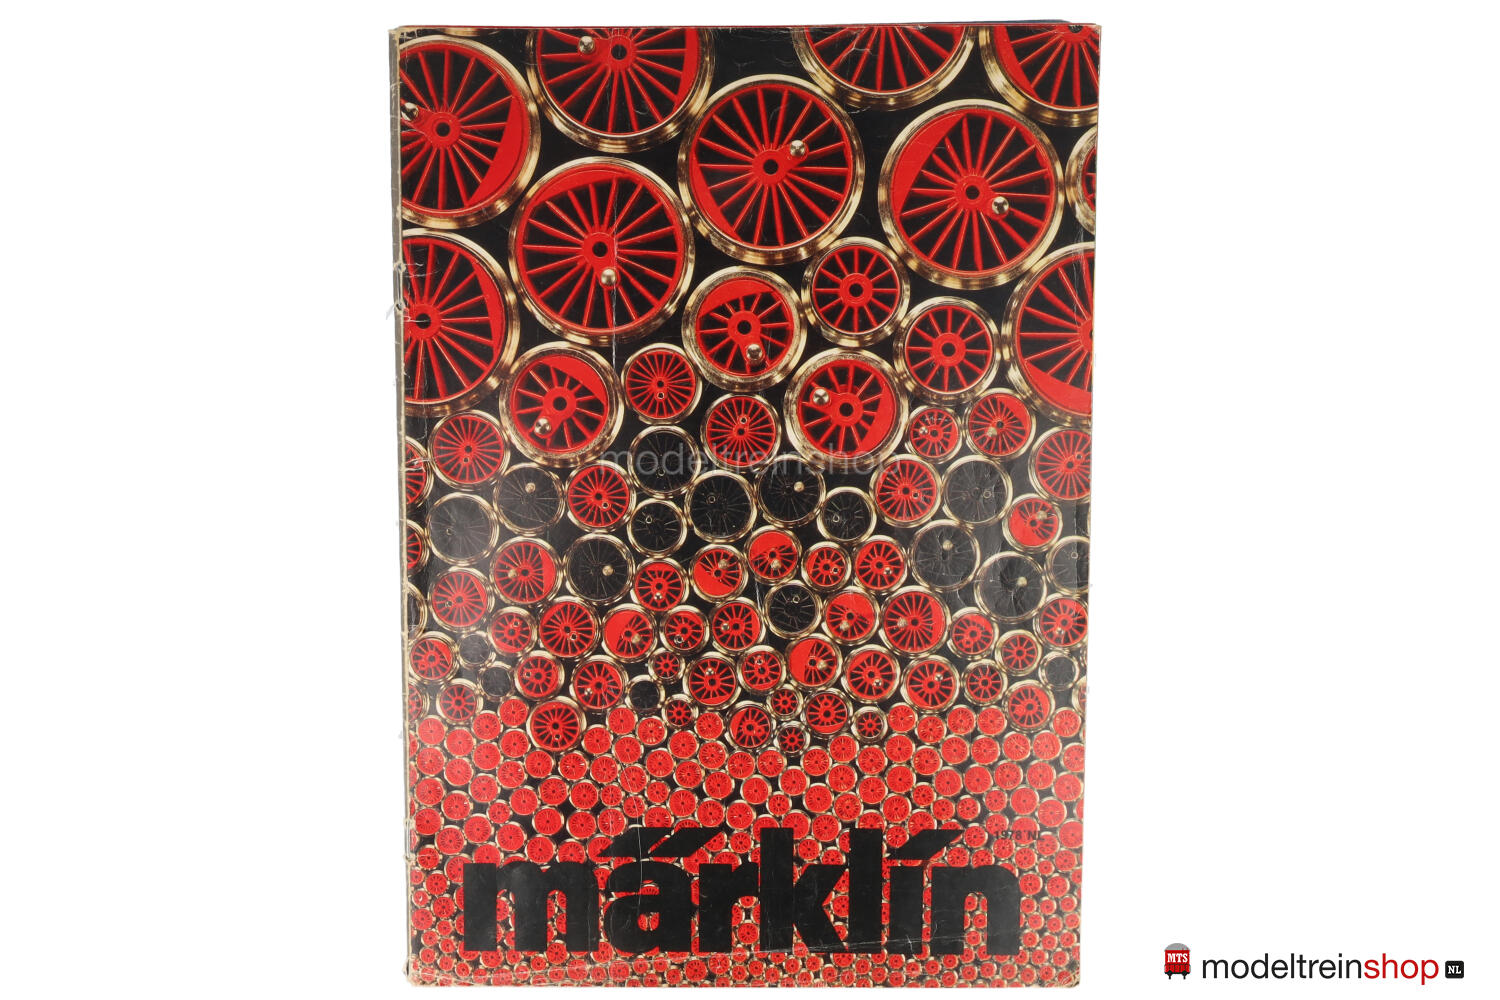 Hong Kong Suri Meesterschap Marklin Catalogus 1978 - Nederlandse Uitgave met prijslijst - Modeltreinshop